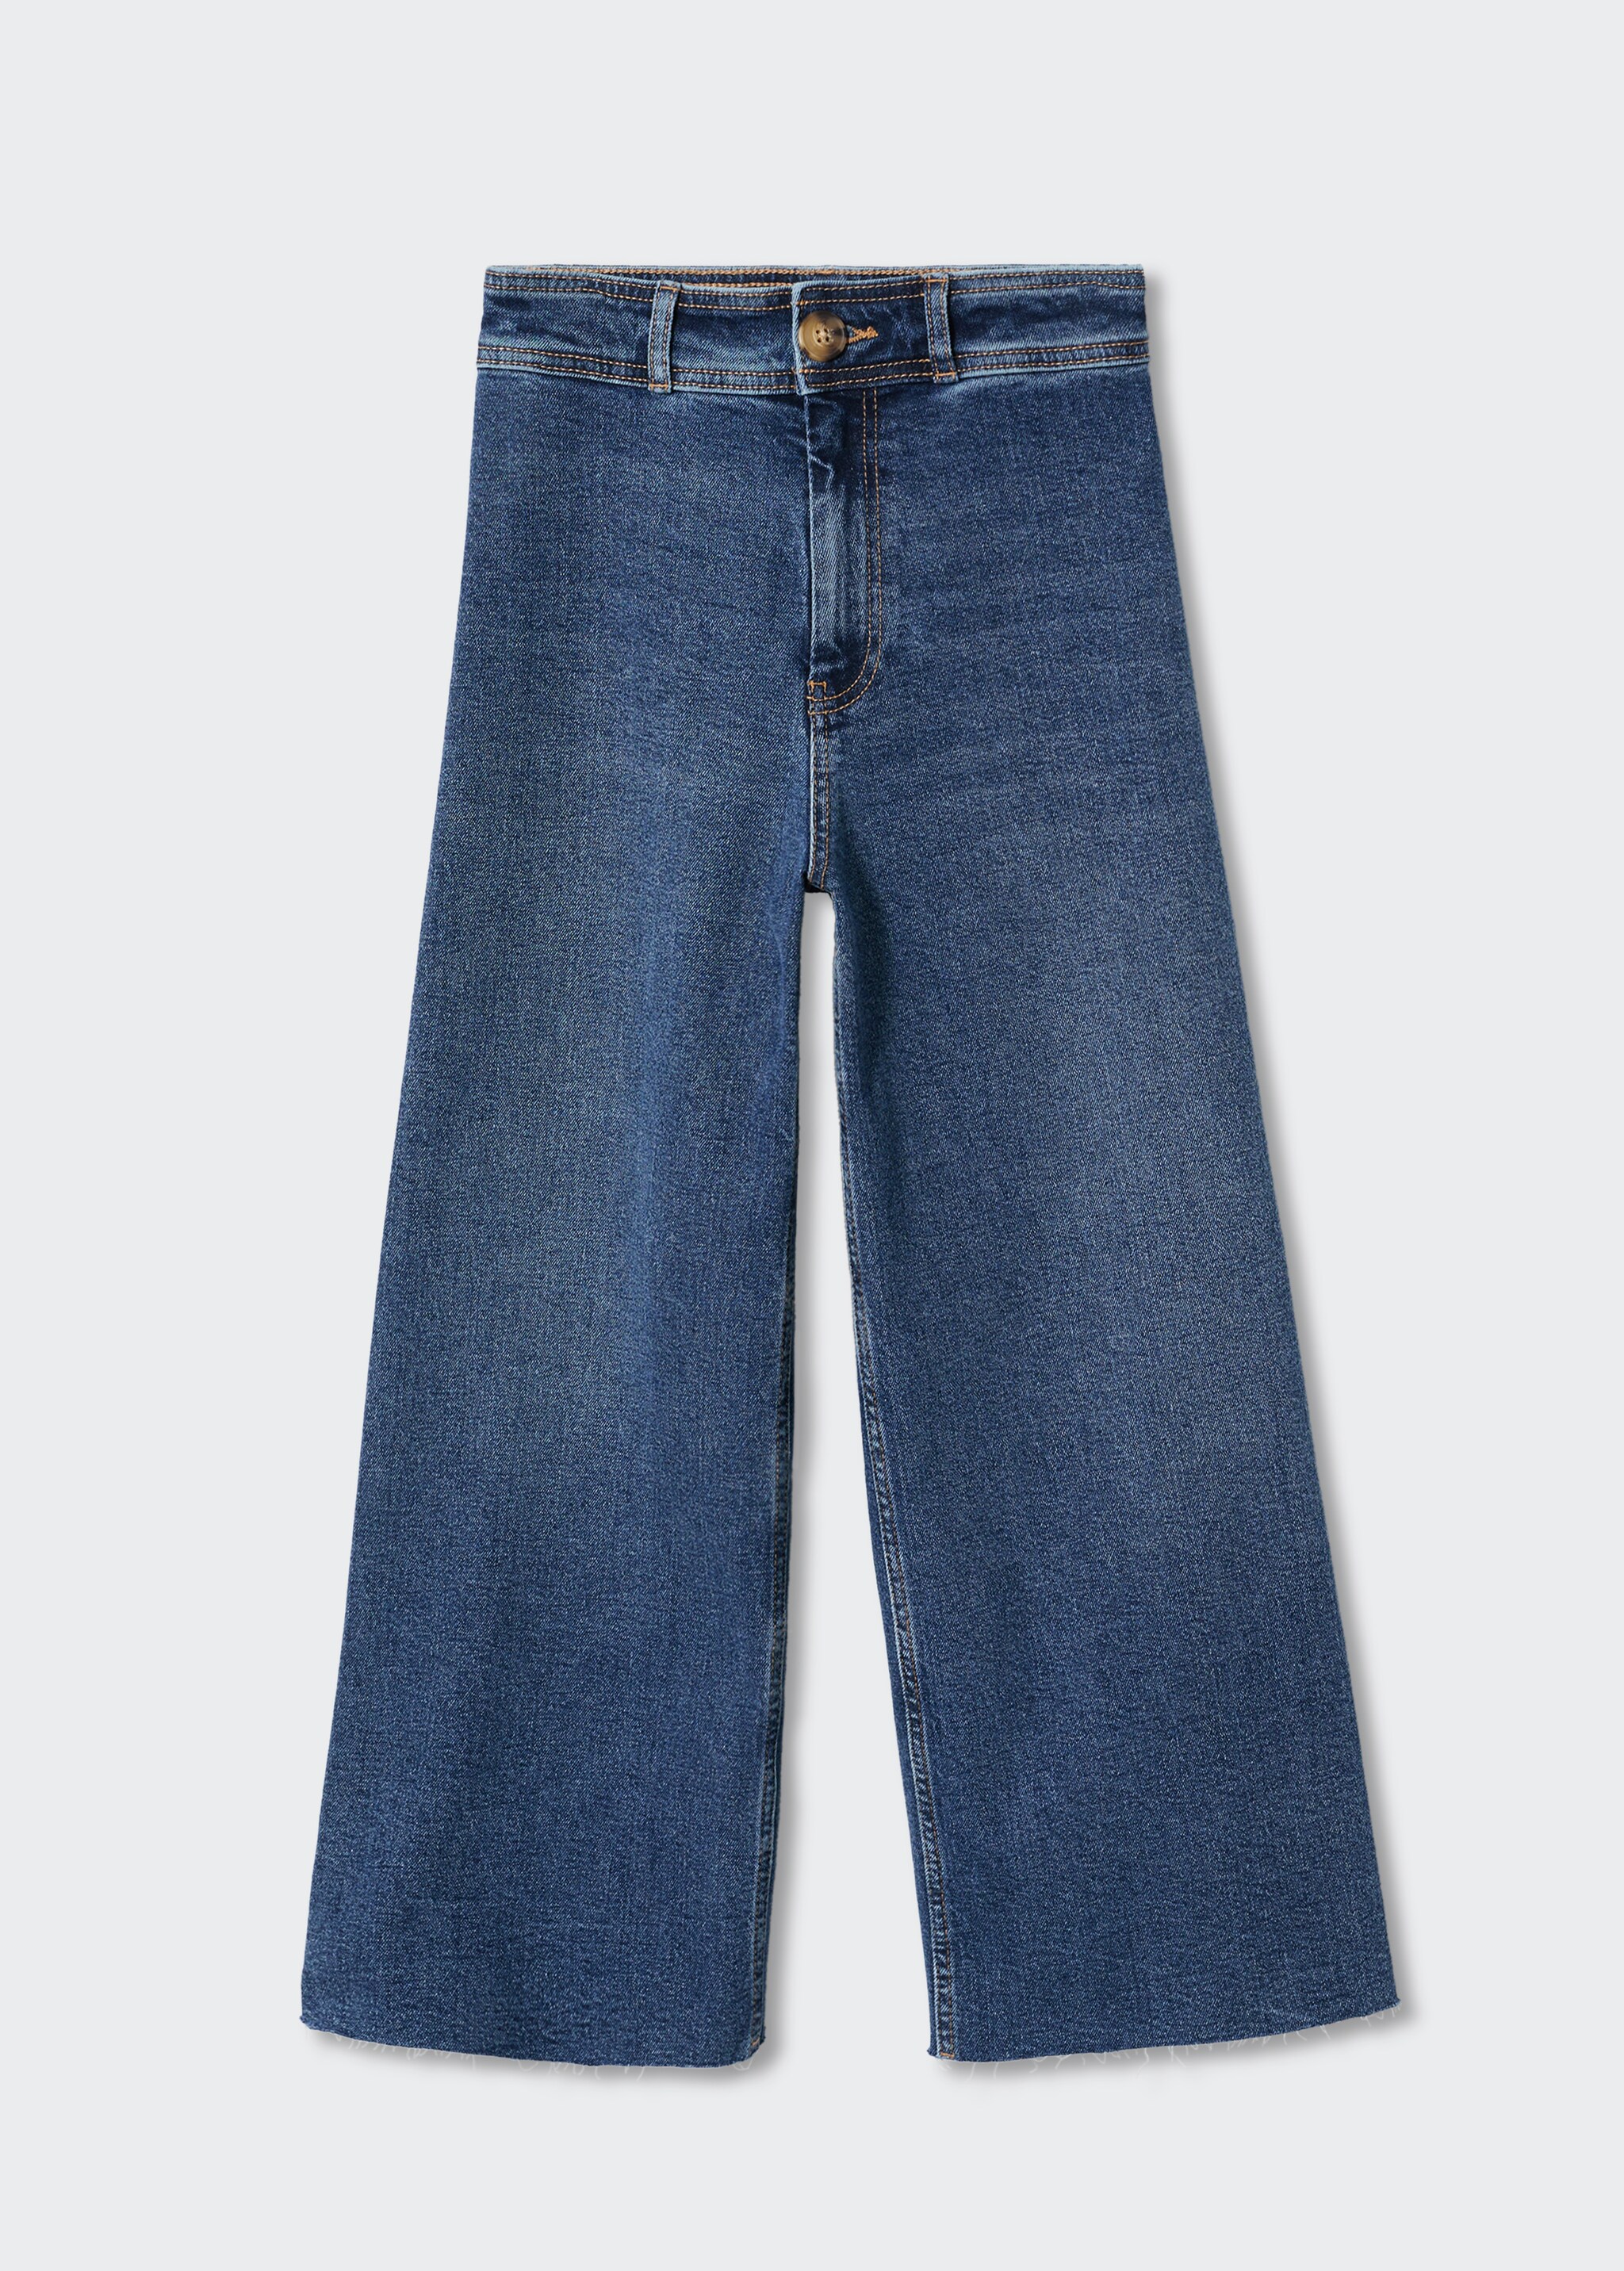 Jupe-culotte jean taille haute - Article sans modèle